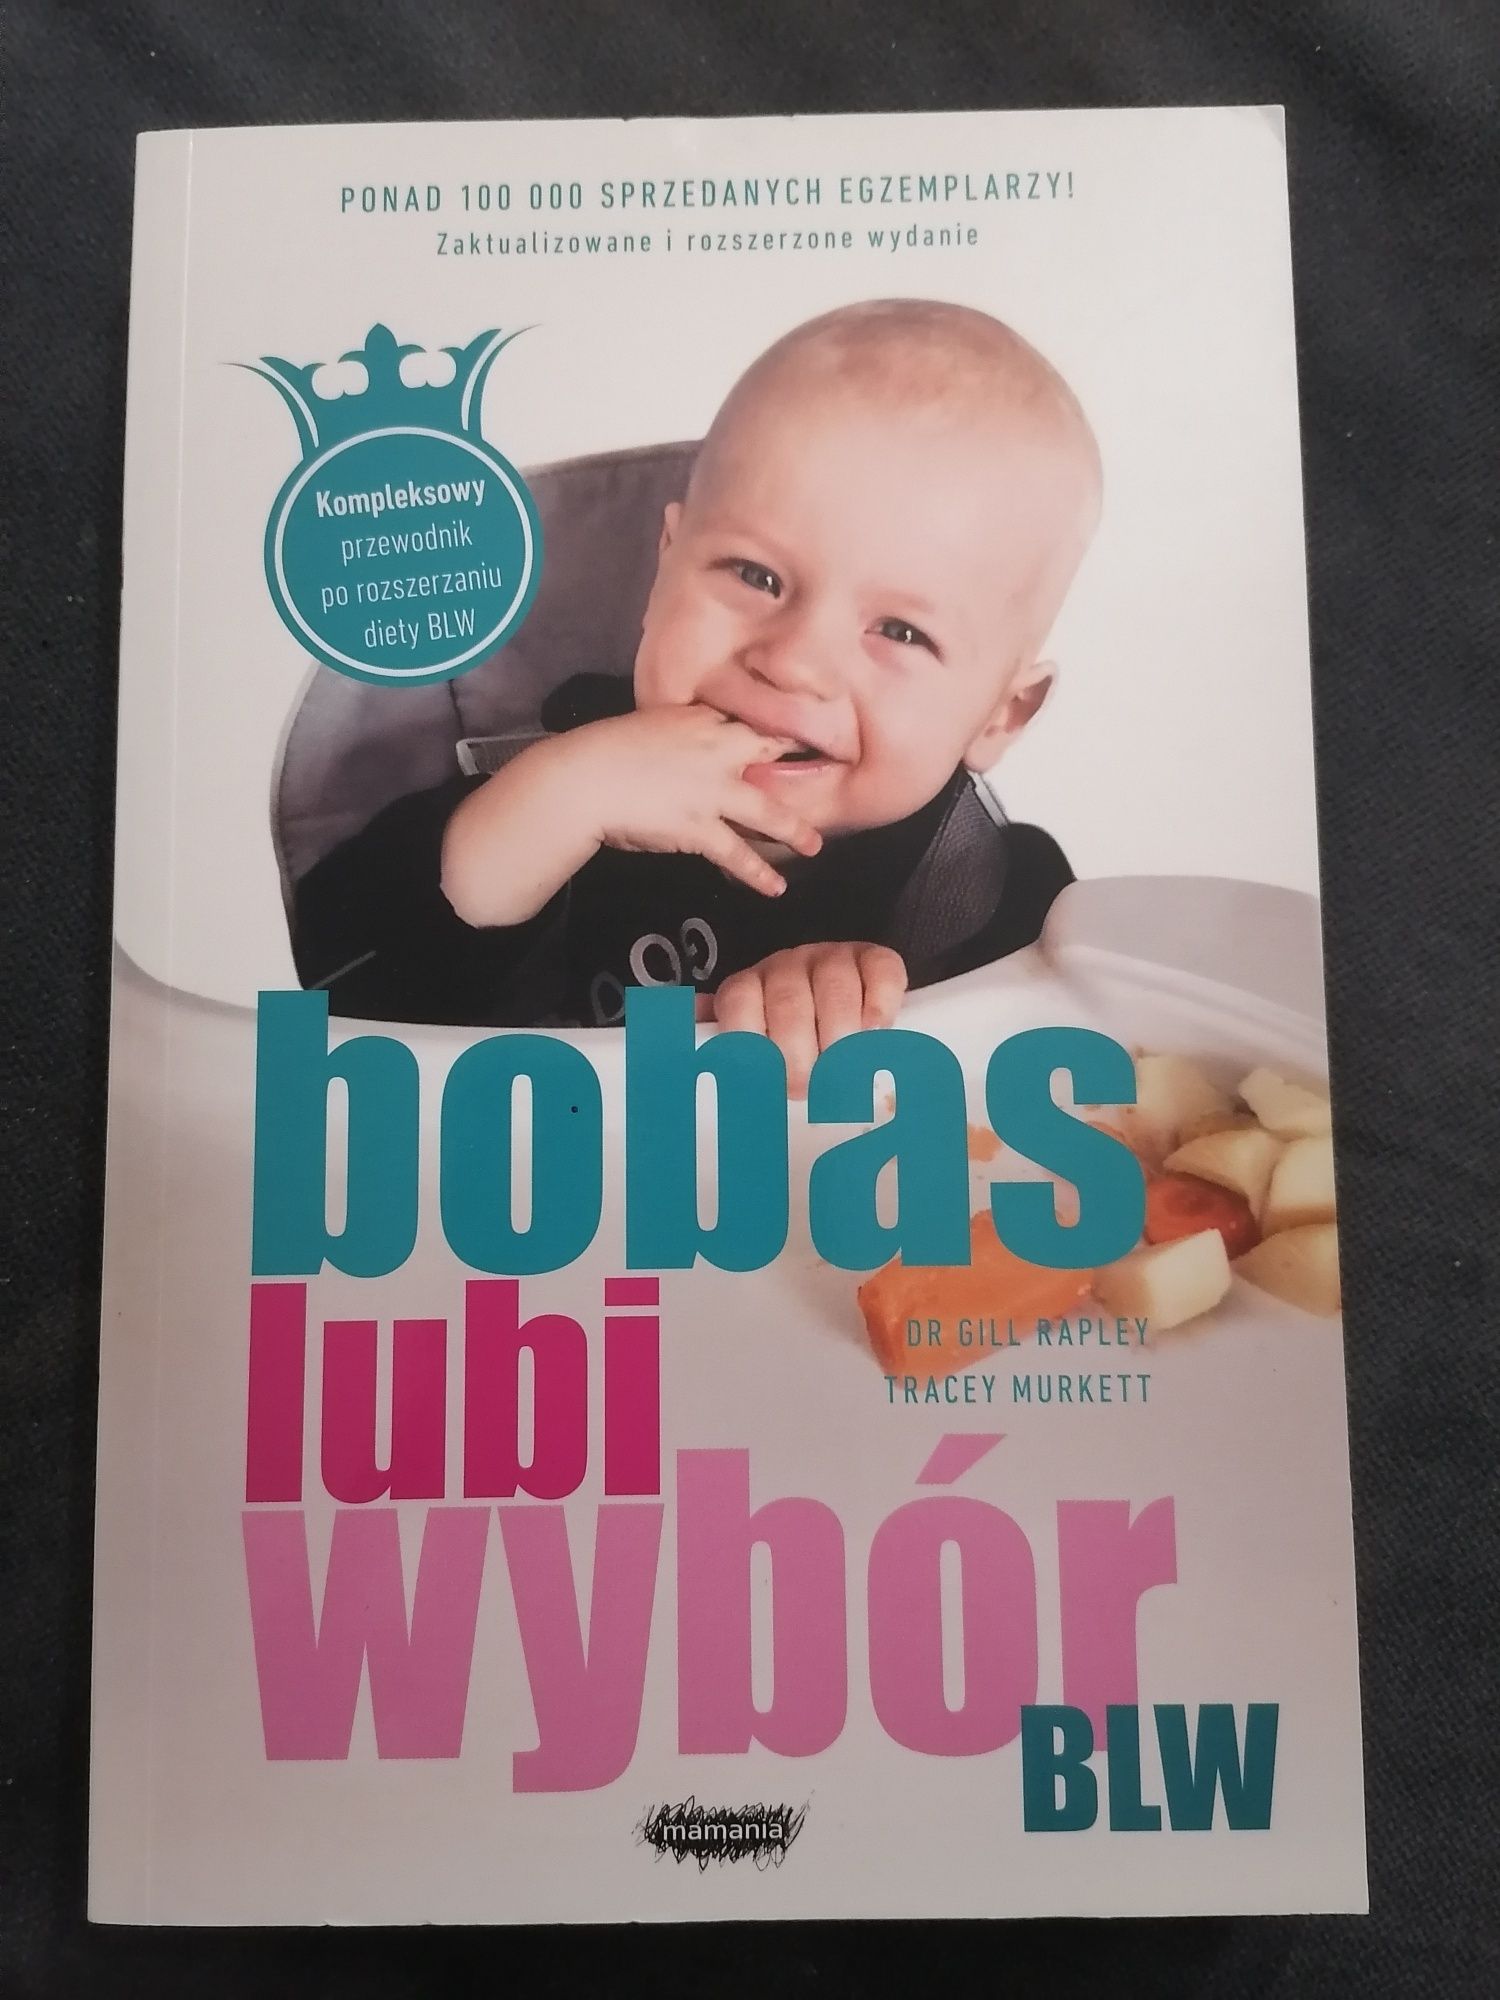 Bobas lubi wybór, książka